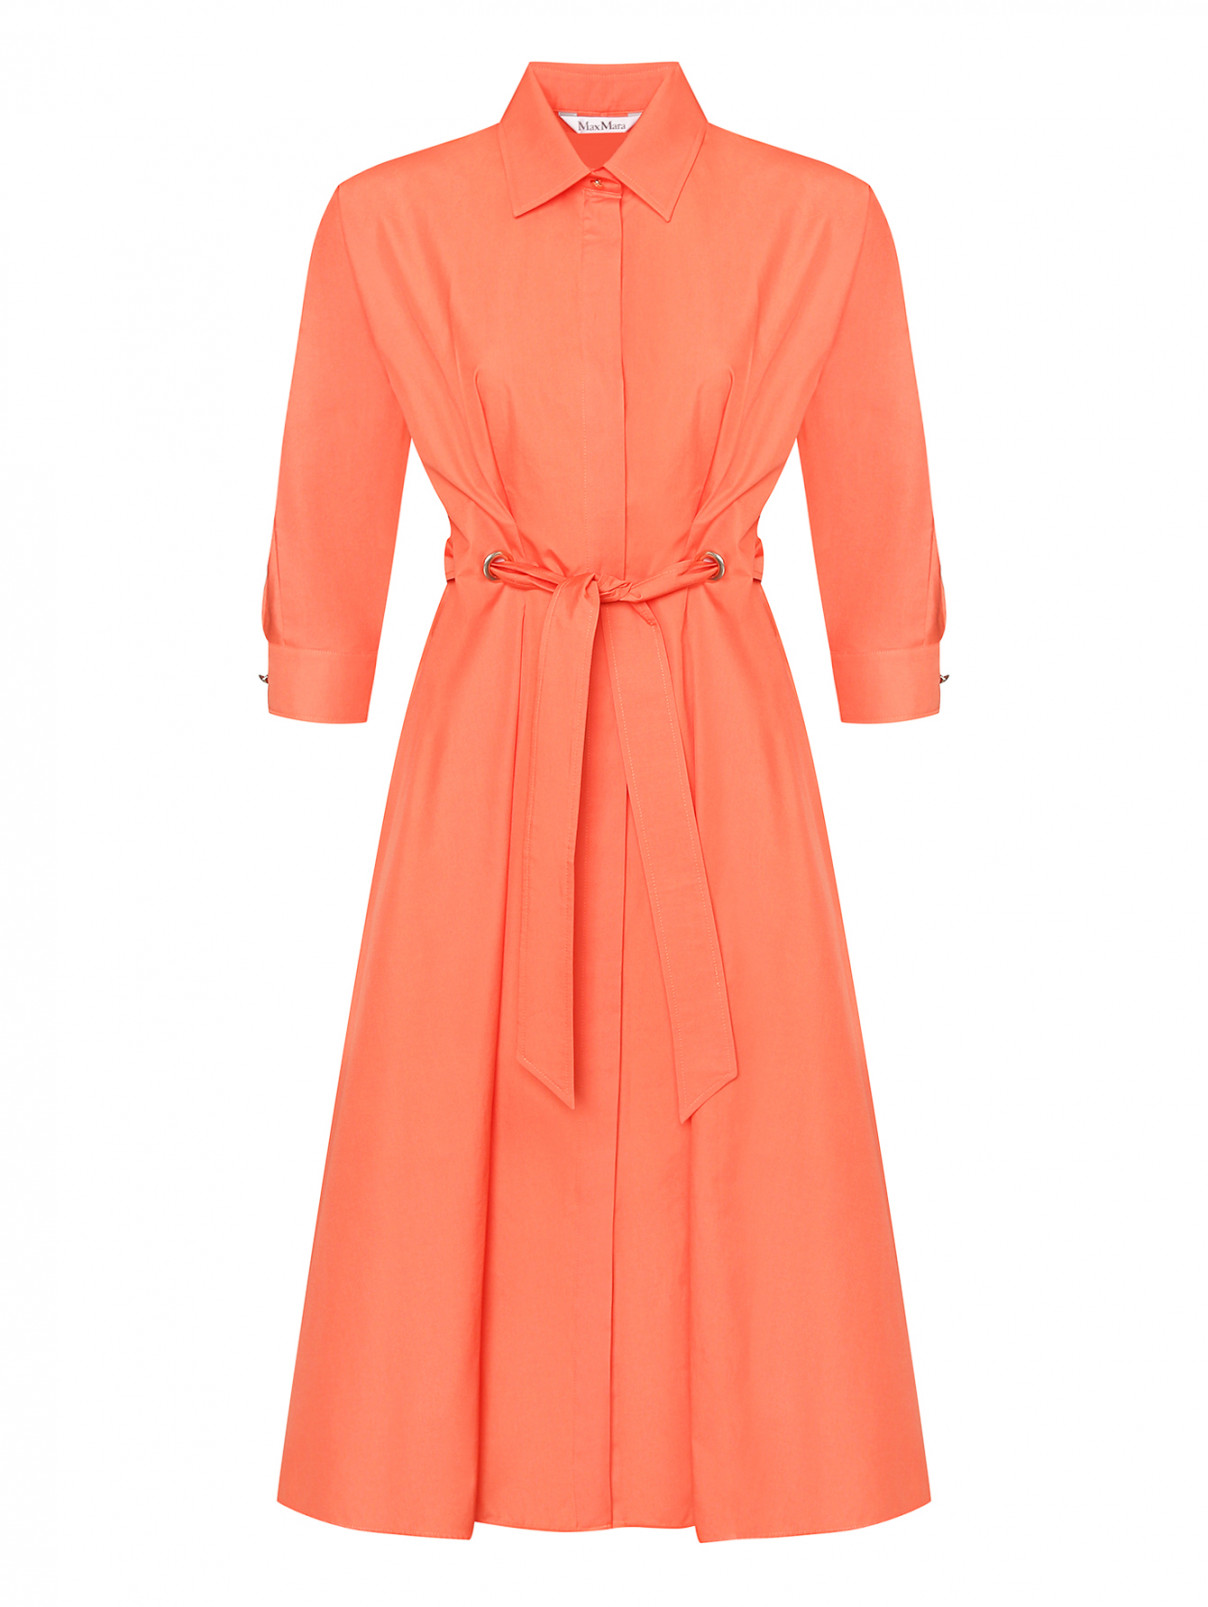 Хлопковое платье с поясом Max Mara  –  Общий вид  – Цвет:  Оранжевый